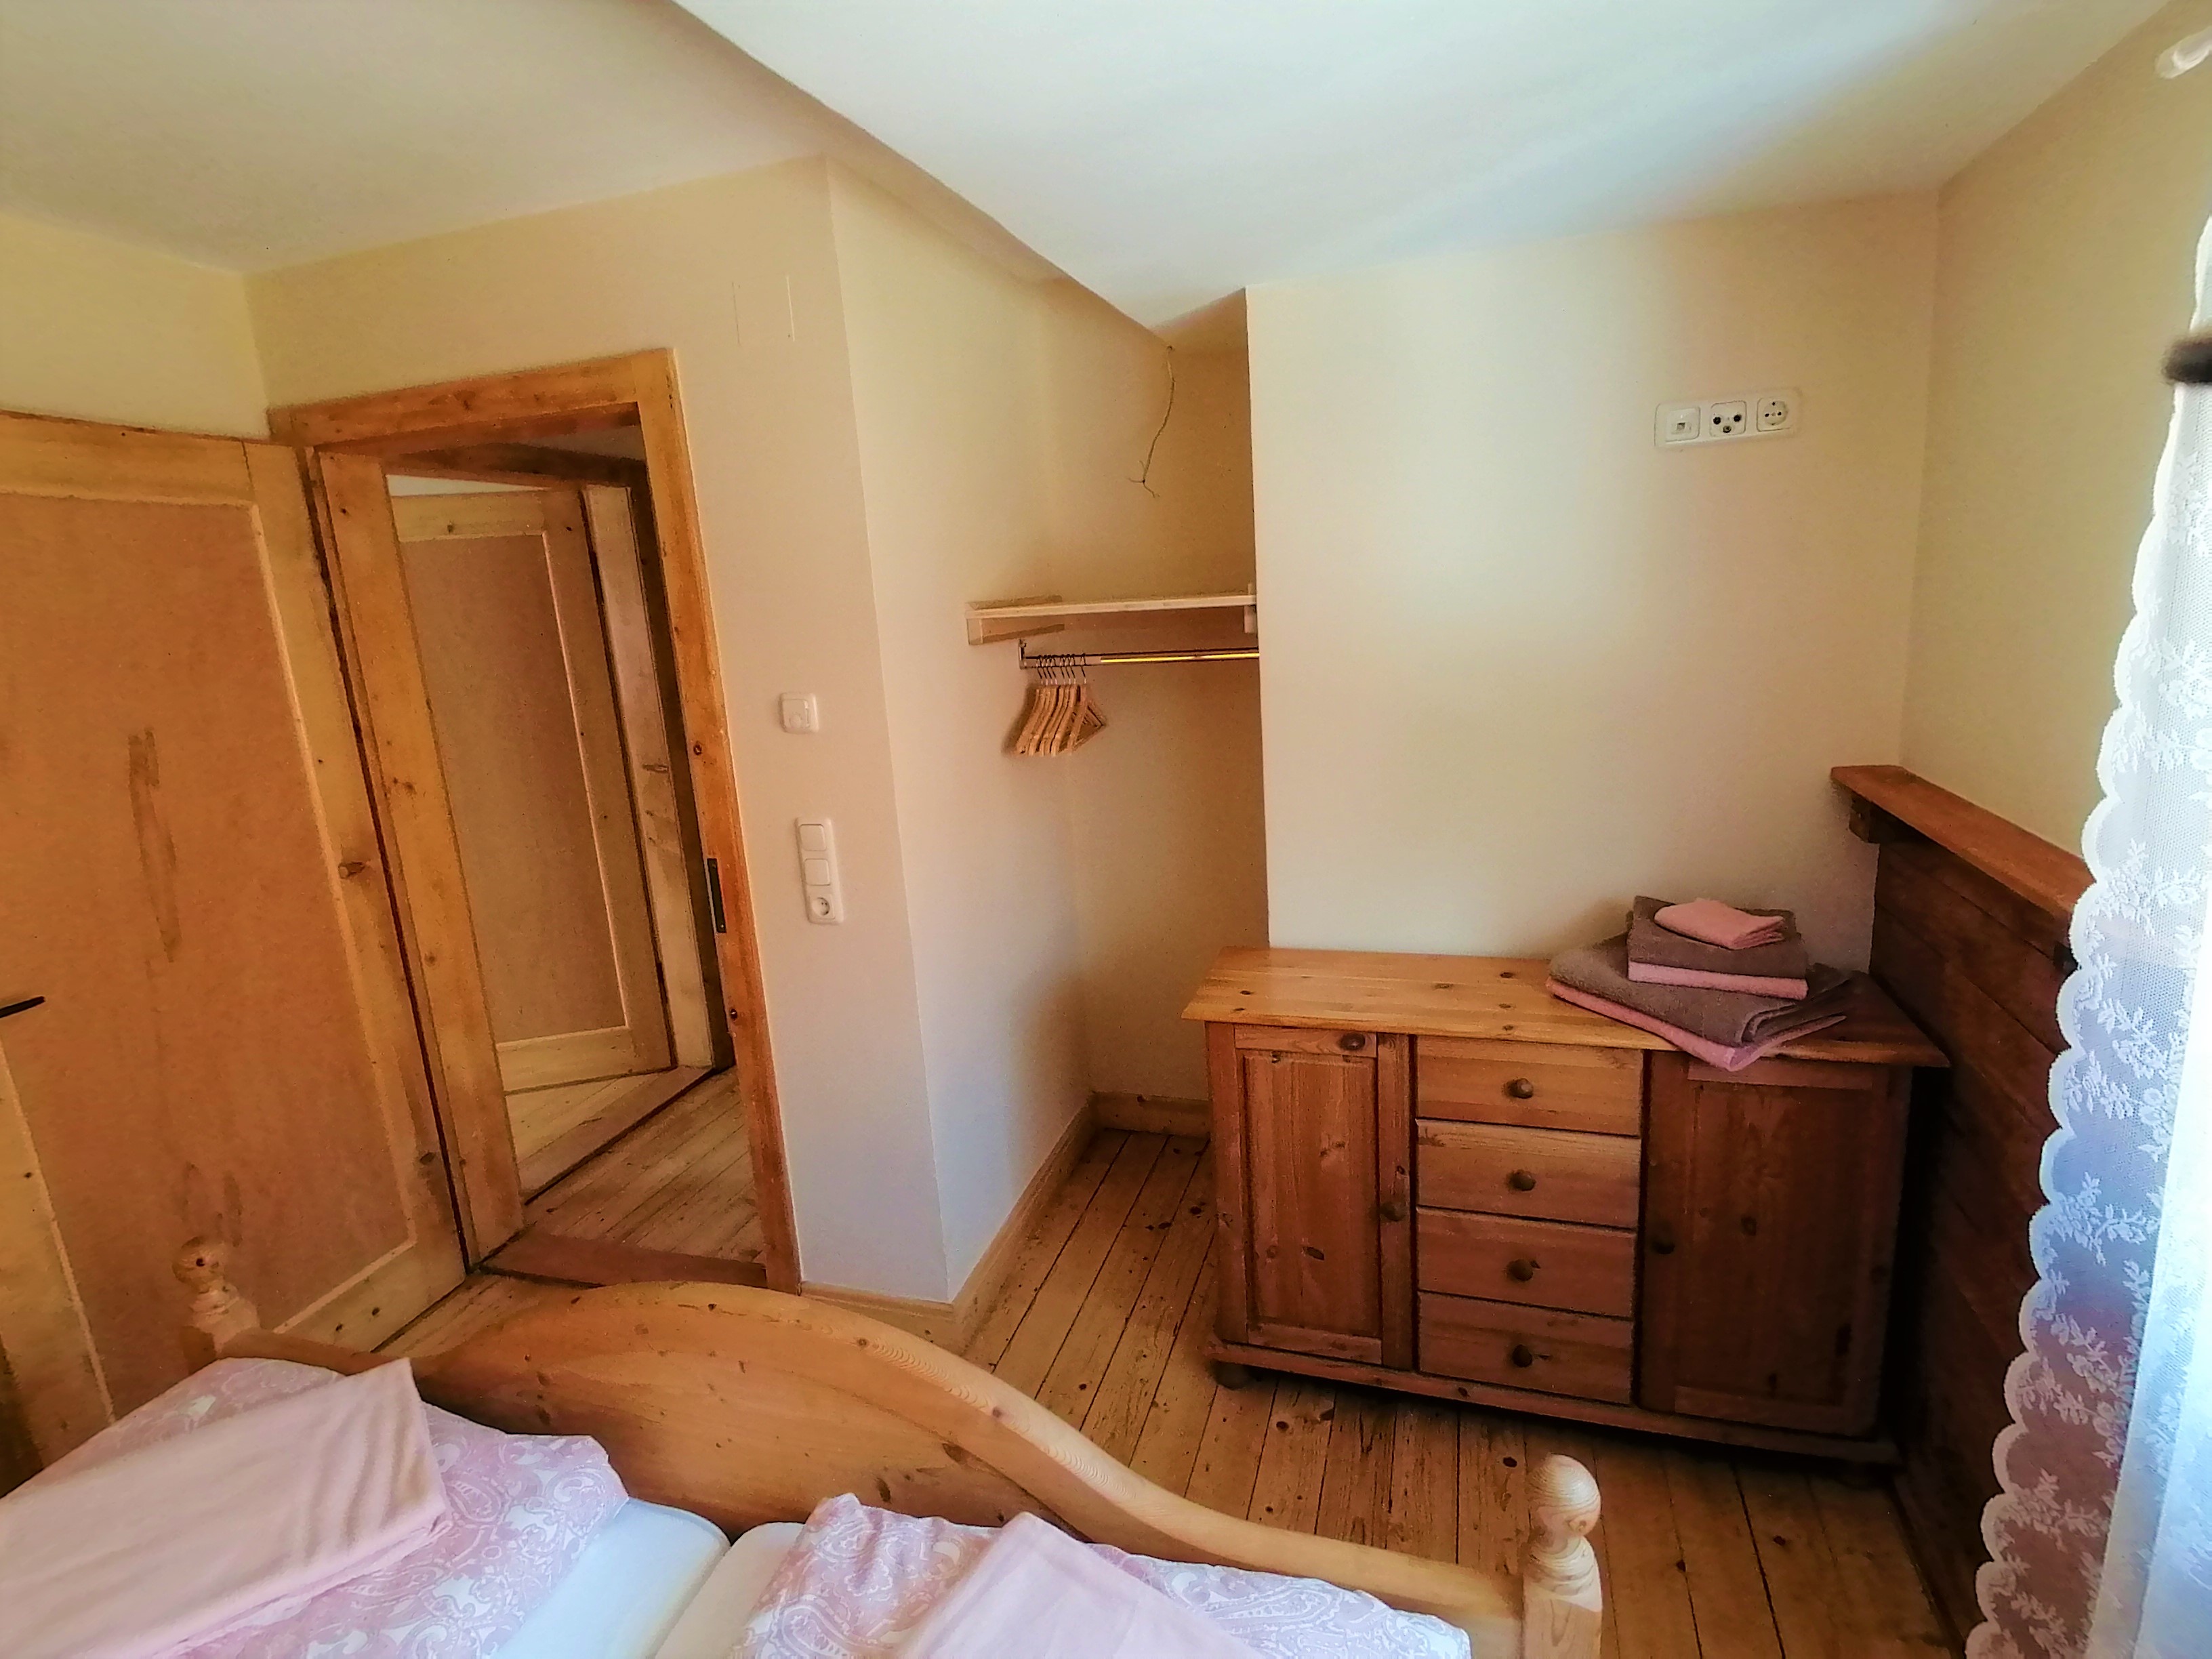 Schlafzimmer mit Holzfußboden und Holztüren